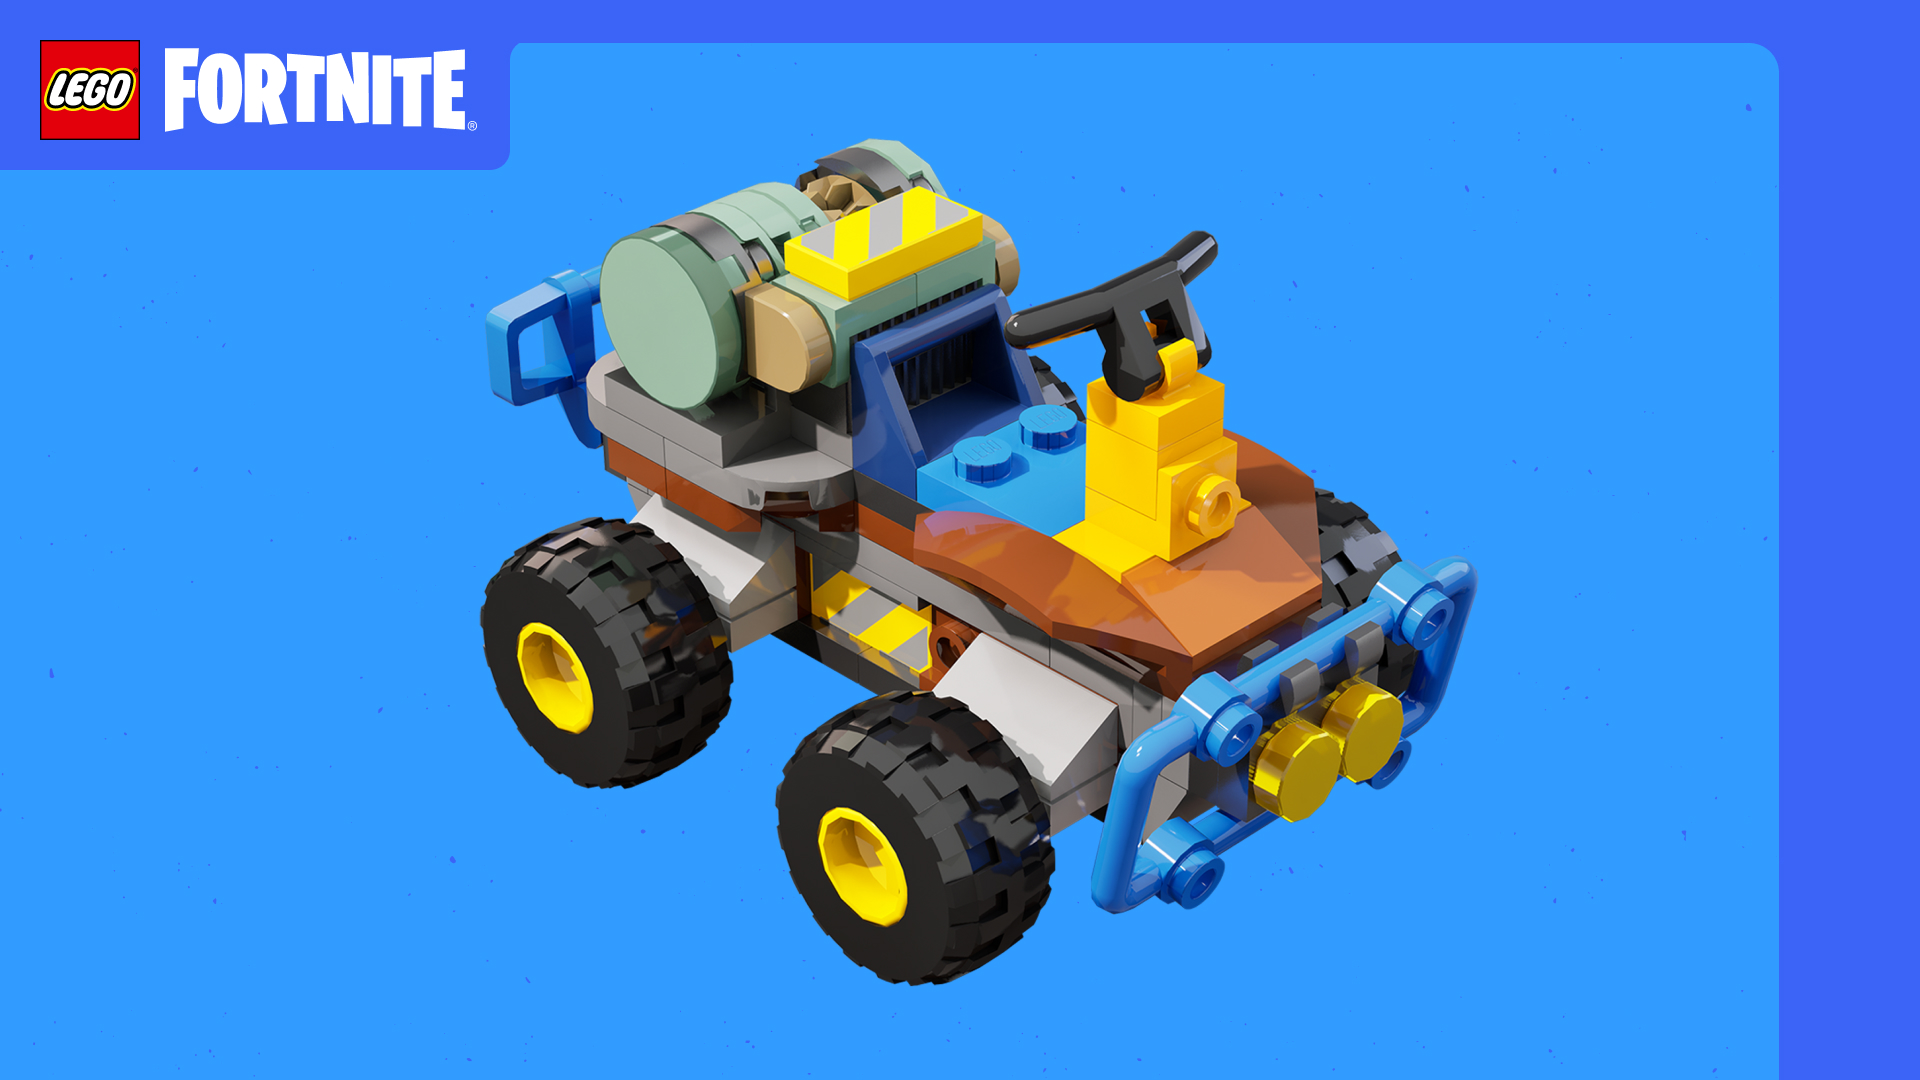 Vehicule Lego Fortnite